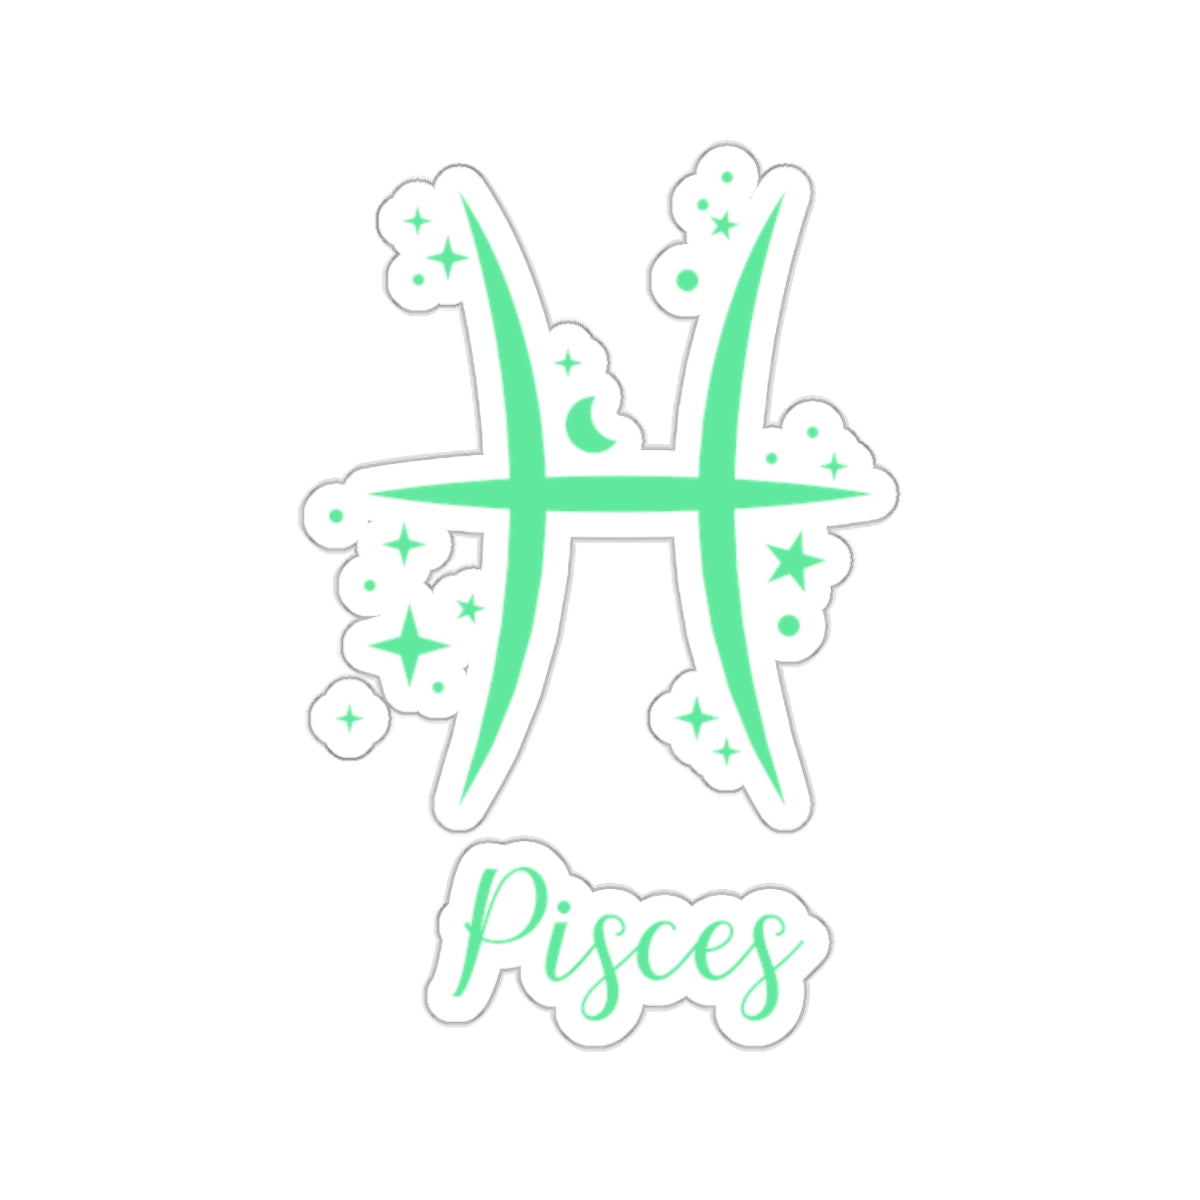 PISCES glyph & stars sticker